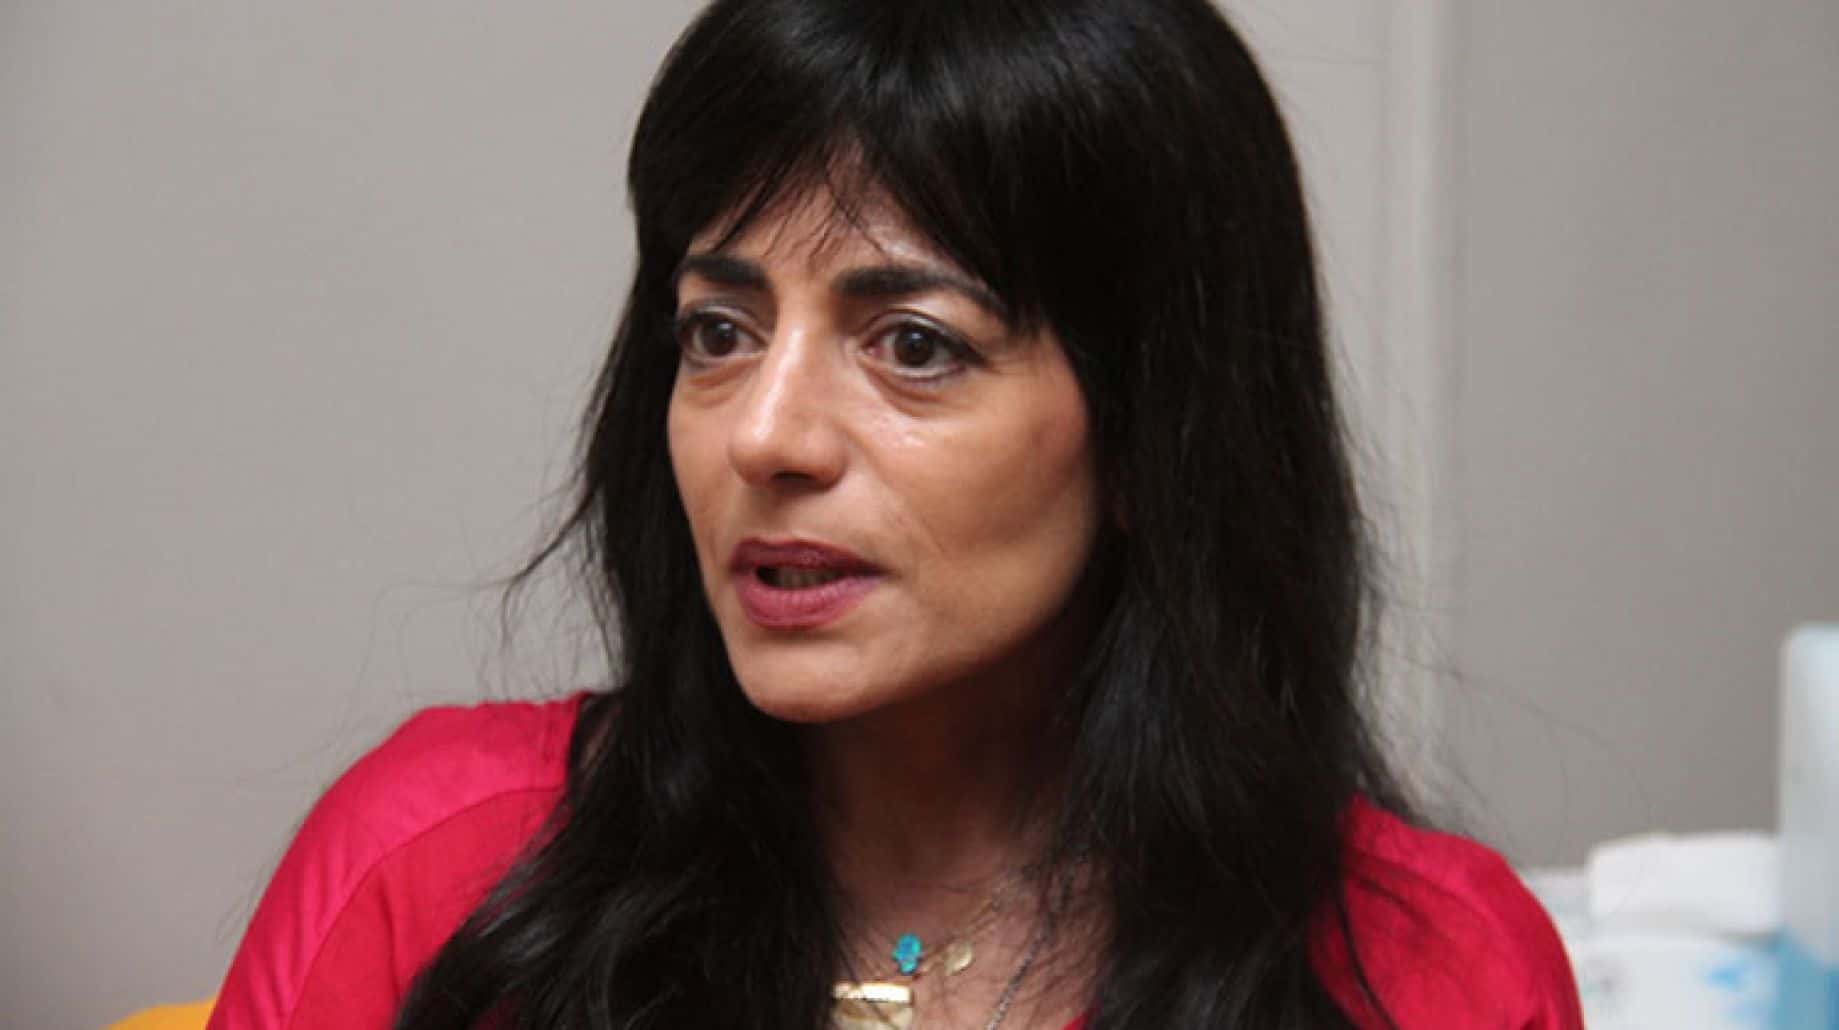 Karima Mansour